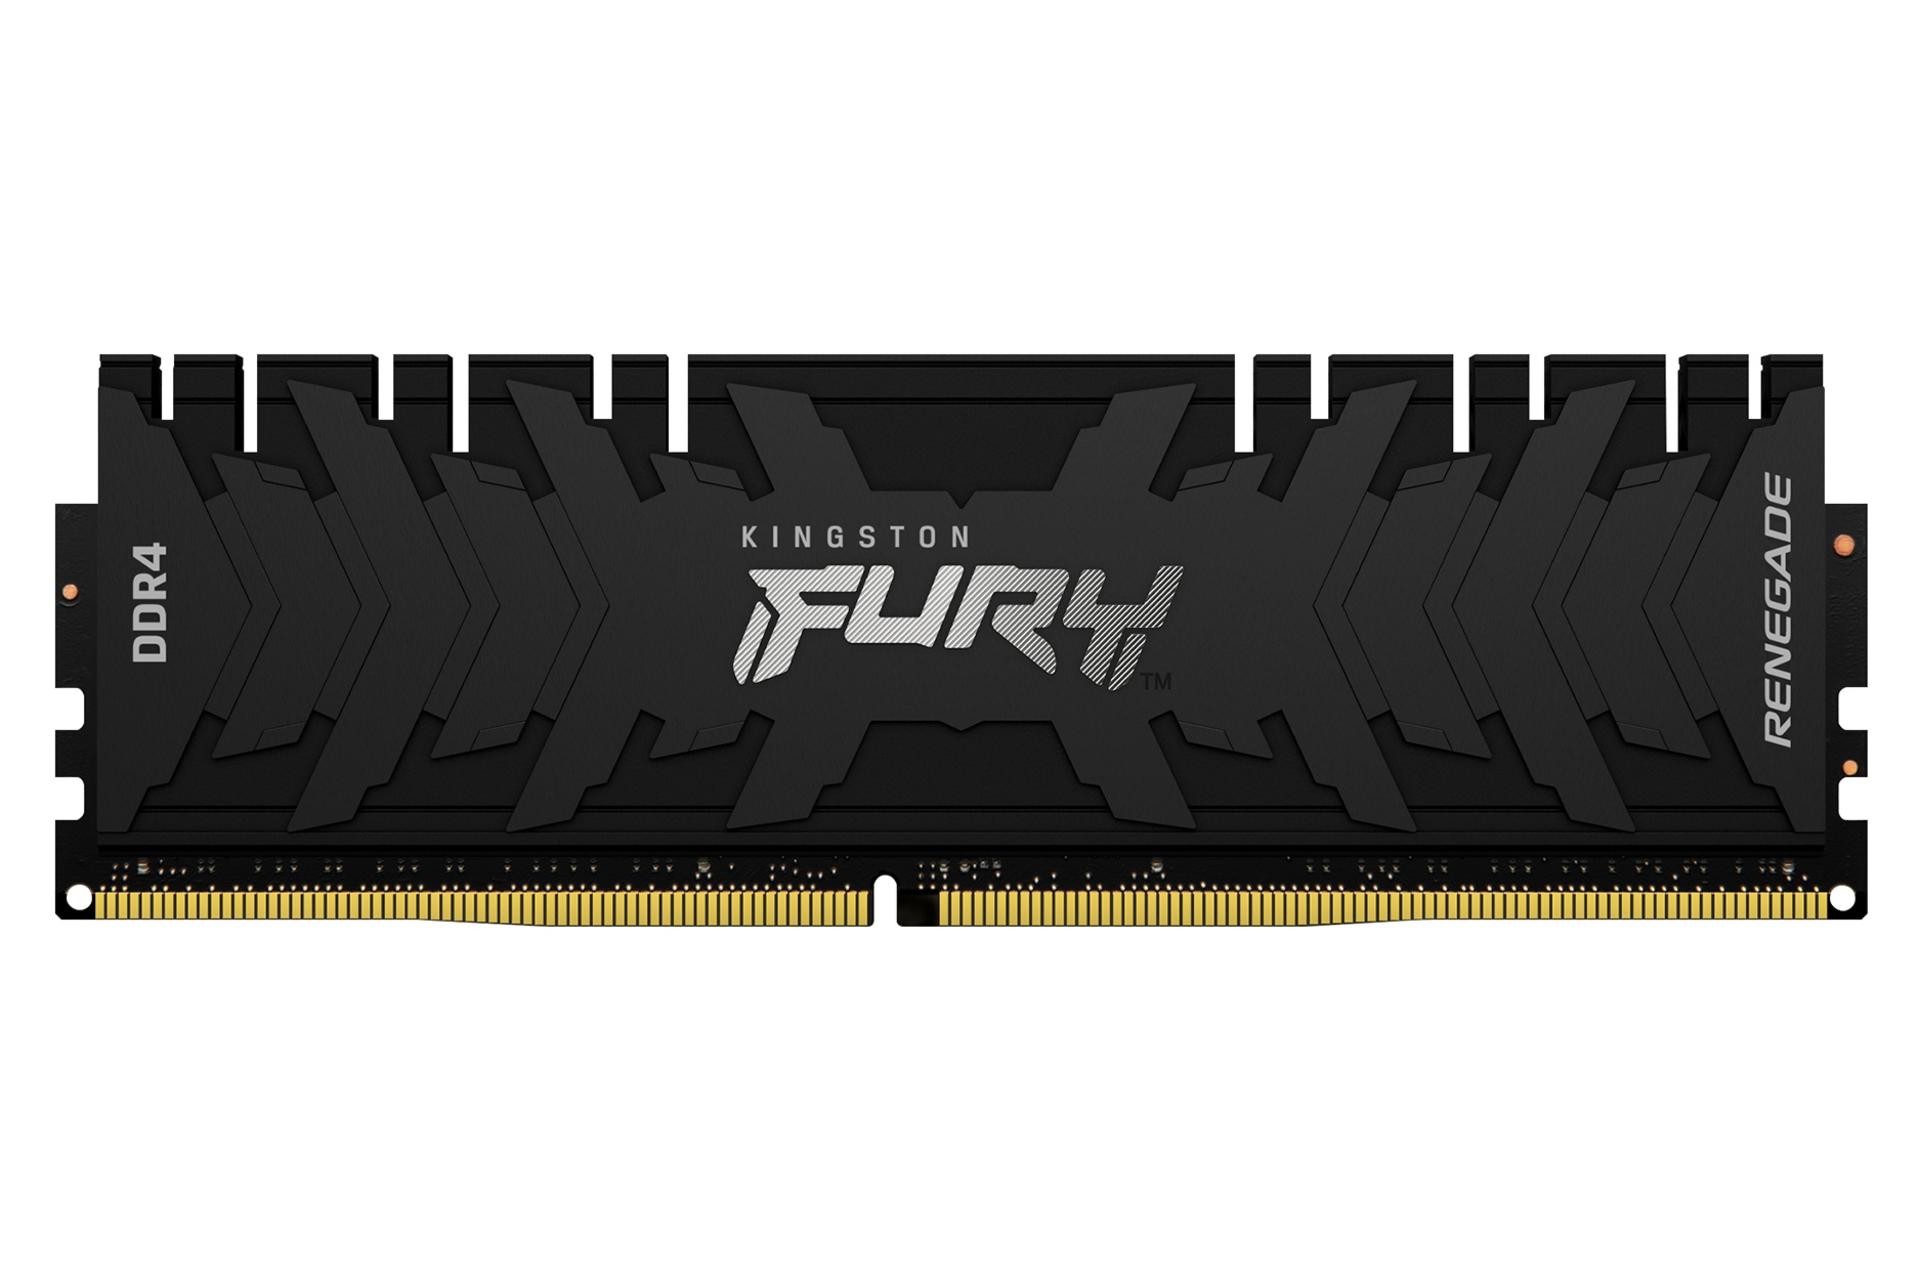 رم کینگستون Kingston Fury Renegade 32GB DDR4-3200 CL16 ظرفیت 32 گیگابایت از نوع DDR4-3200